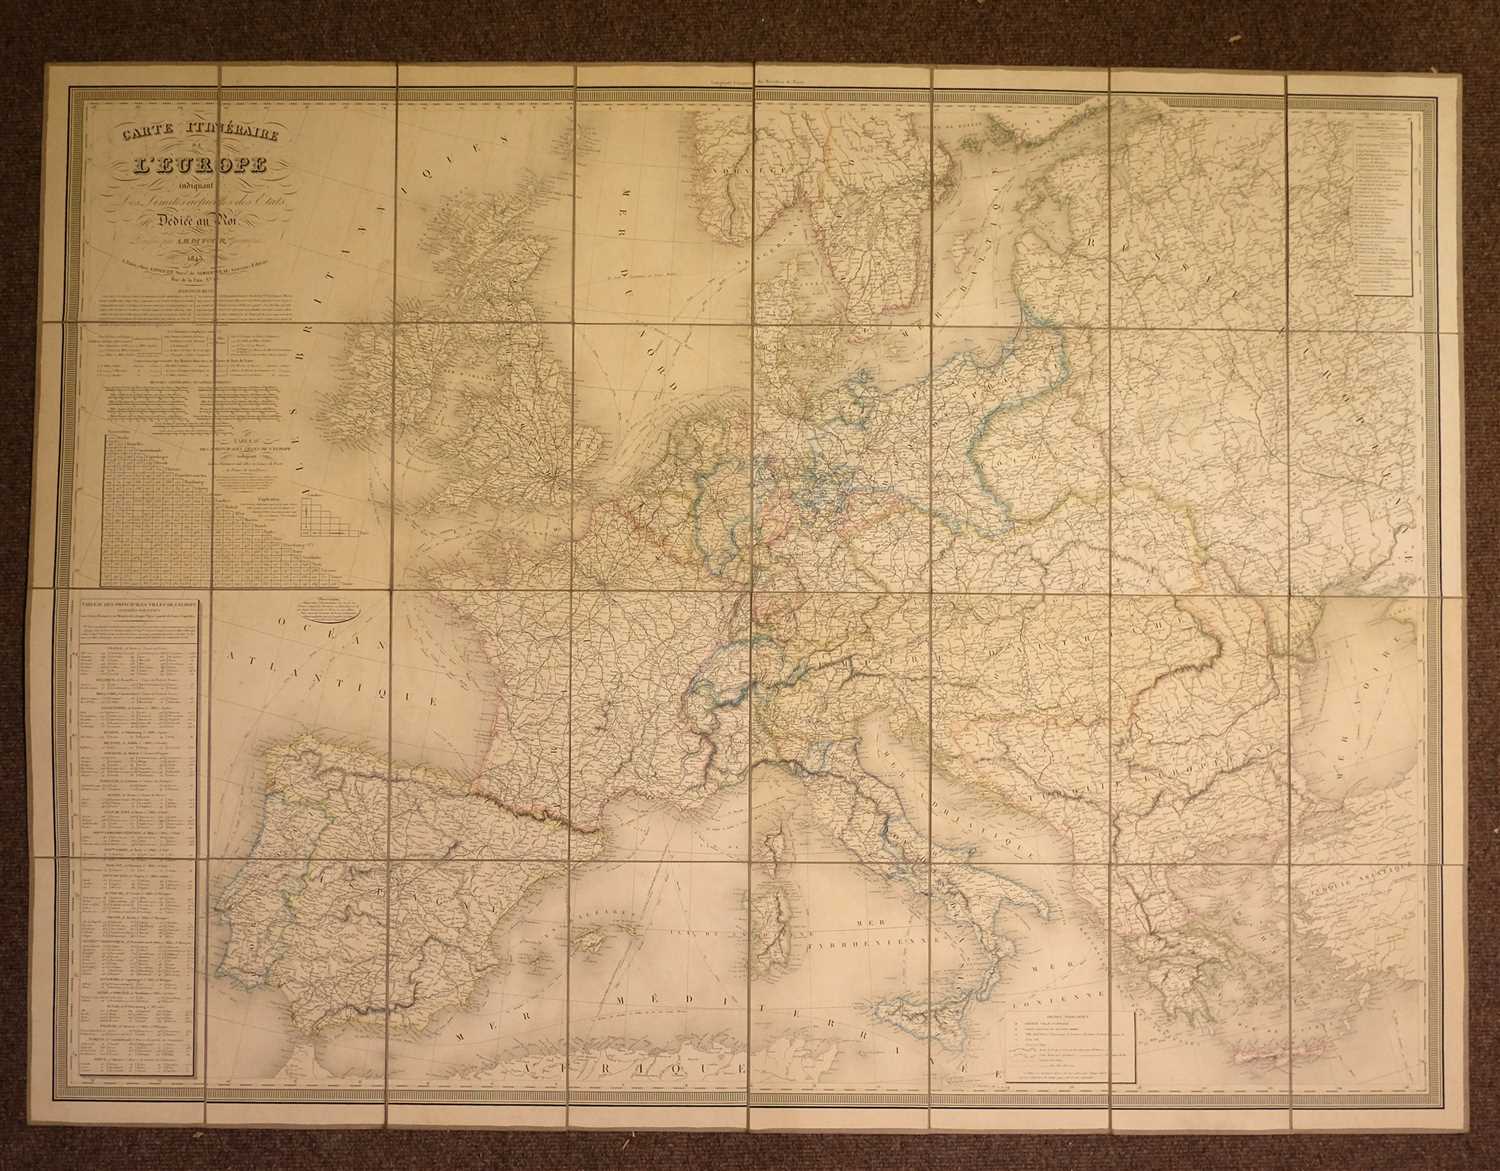 Lot 2 - Europe. Dufour (A. H.), Carte Itineraire de L'Europe..., Paris, 1843